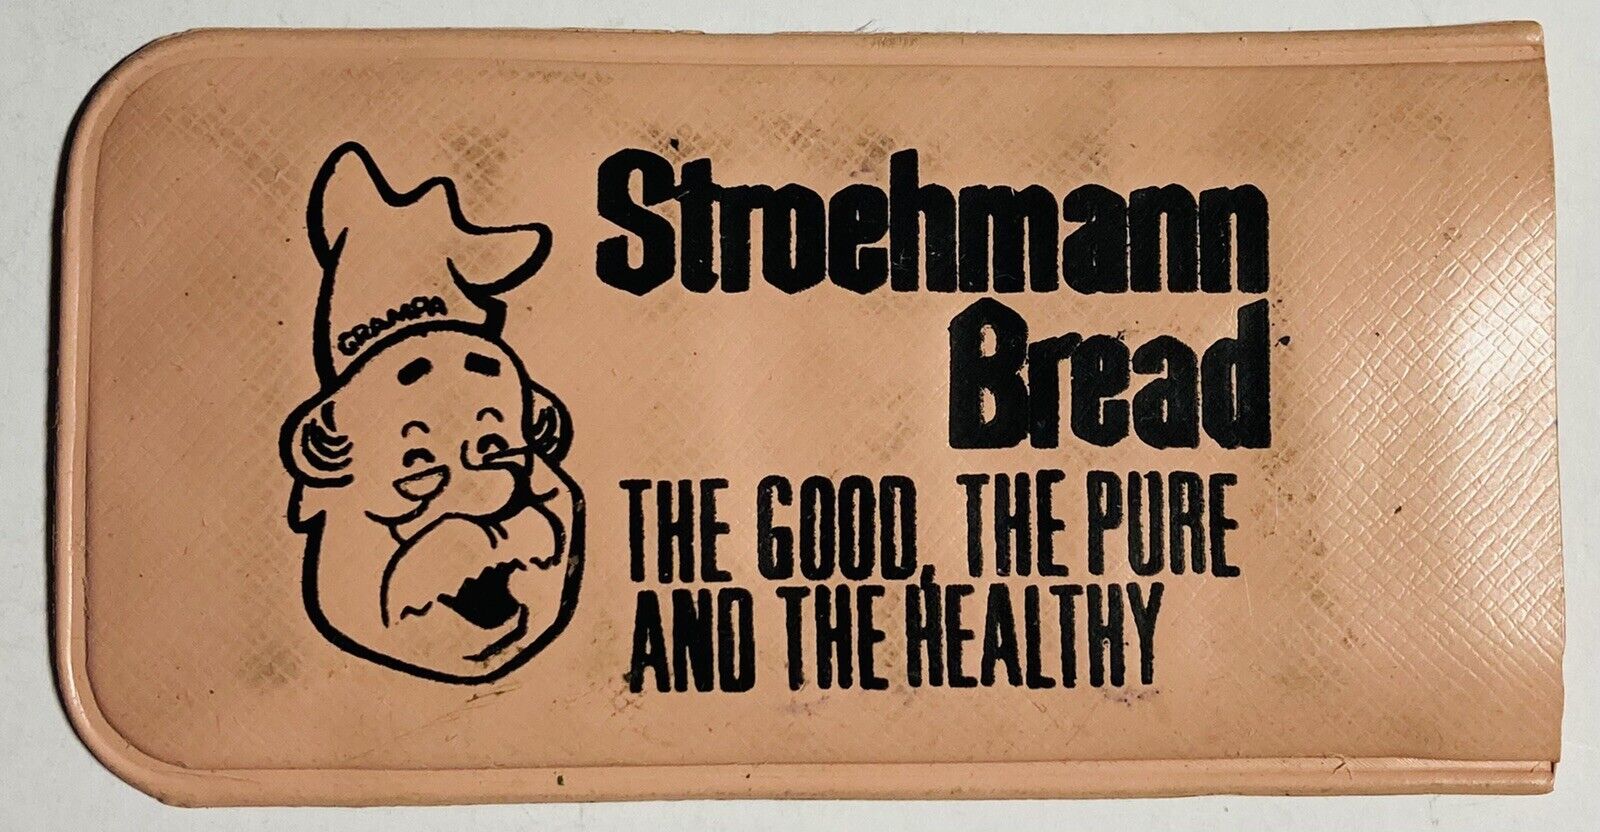 Stroehmann Bread Vintage Sewing Kit Advertising Very Old Unused kit